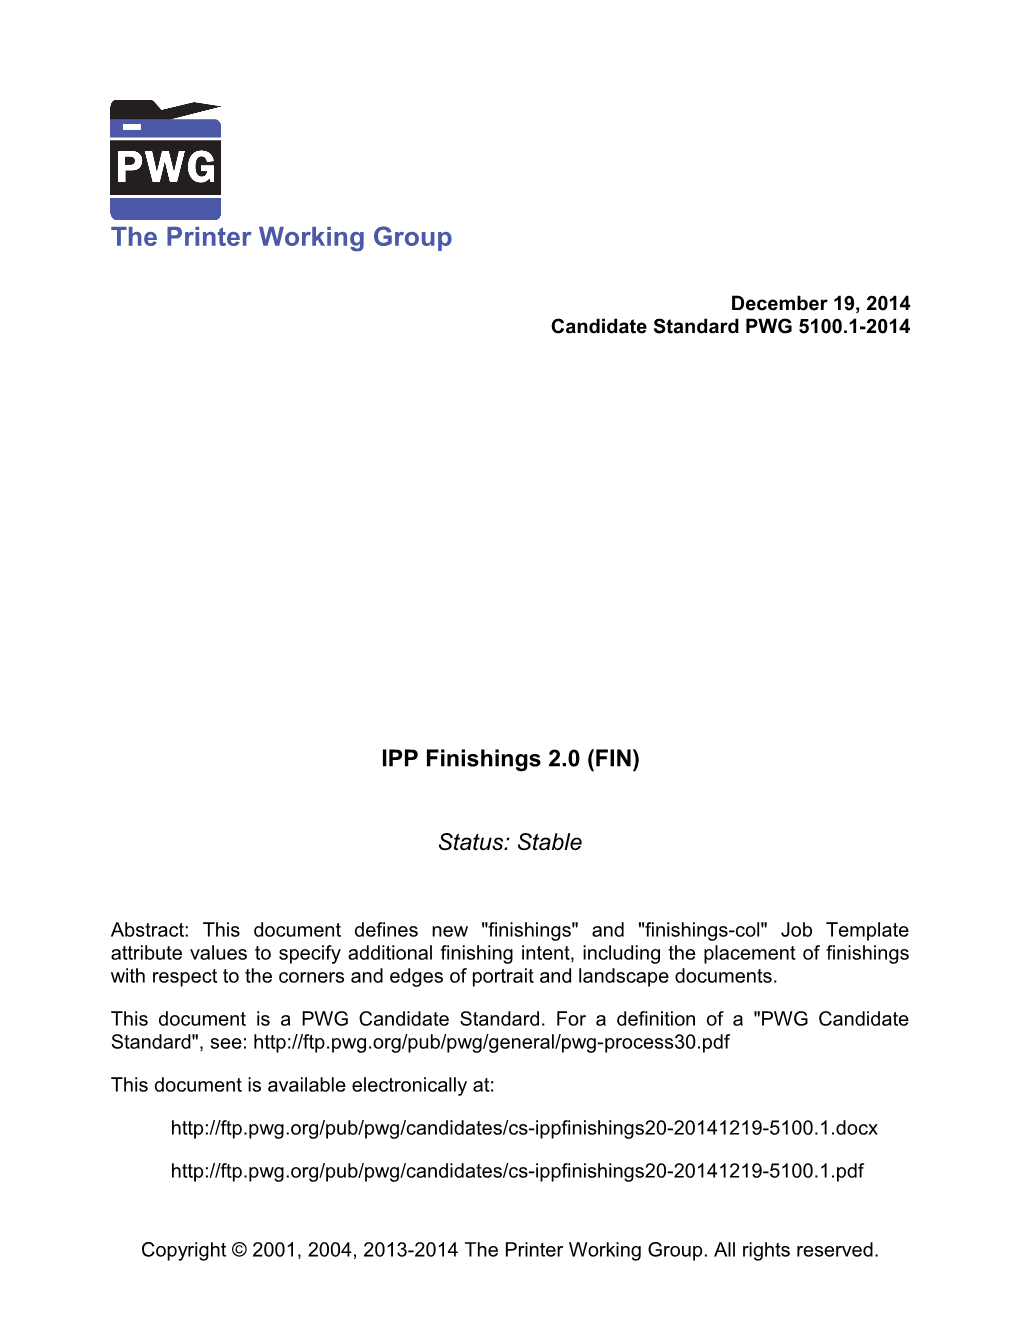 IPP Finishings 2.0 (FIN)